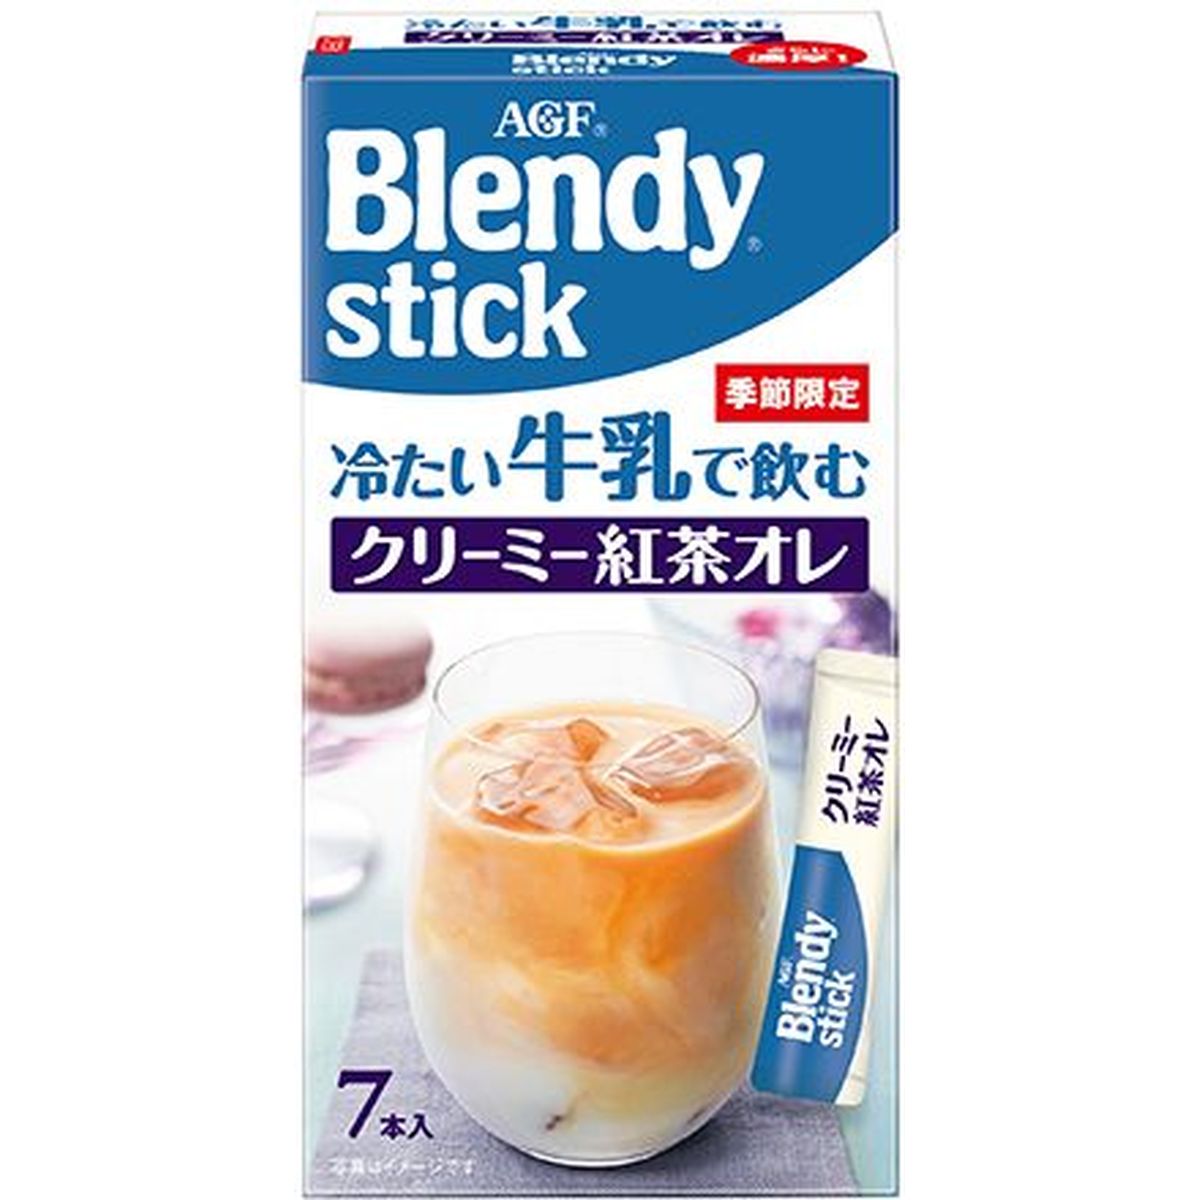 【6個入リ】AGF ブレンディスティック冷タイクリーミー紅茶 7本